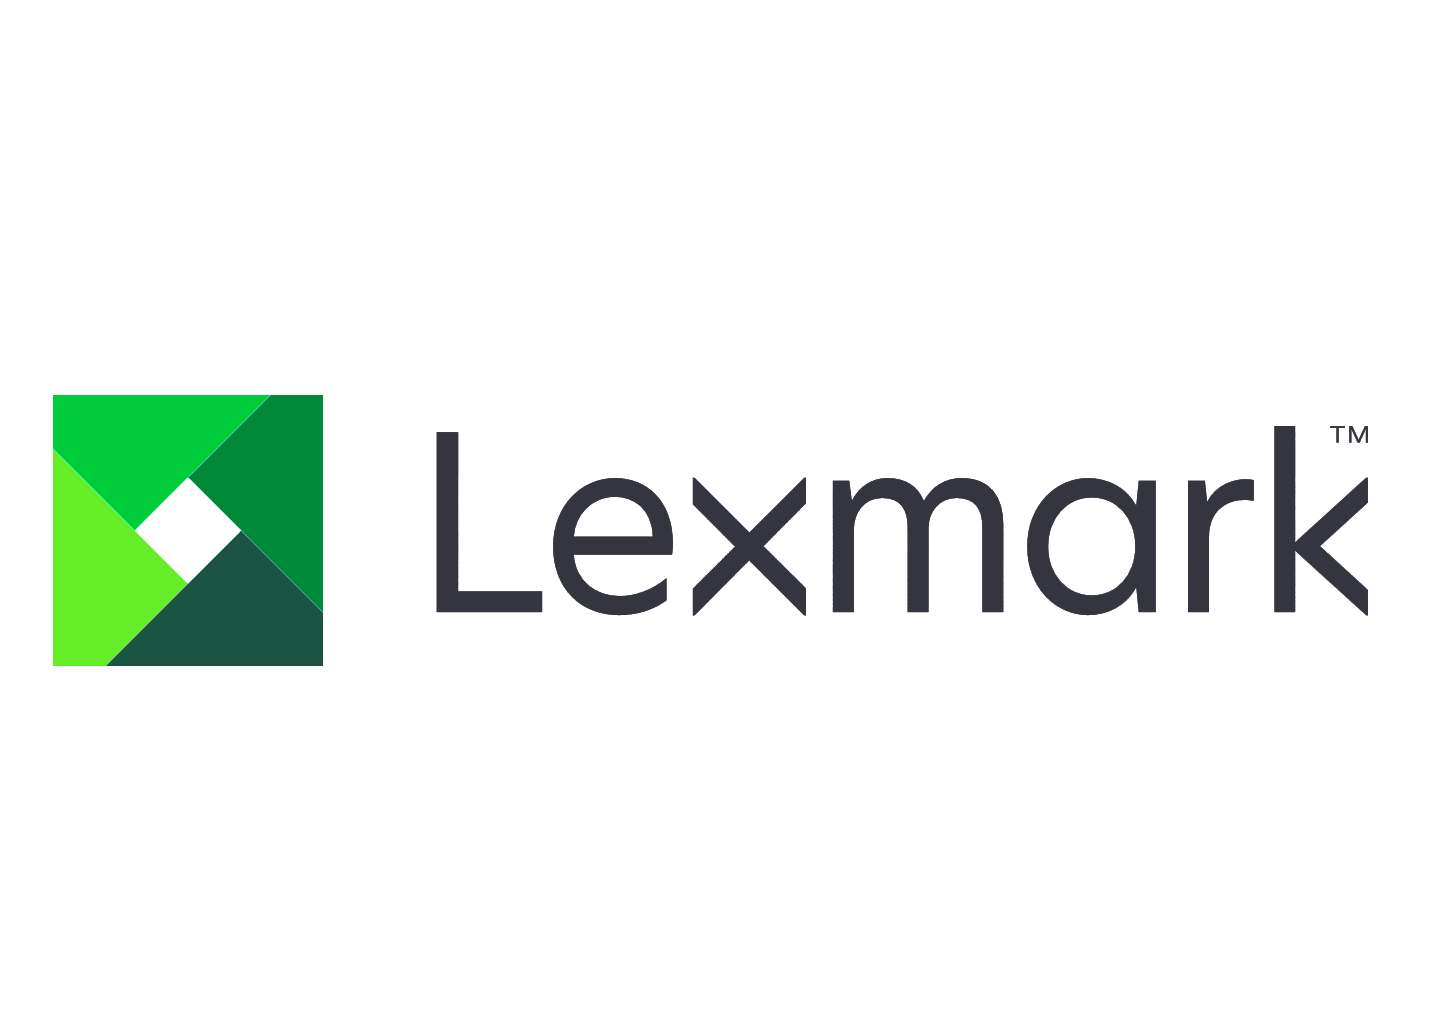 Ролик захвата из кассеты Lexmark оригинал для Lexmark MS91x, MX91x, CS92x, CX92x, 1шт. (40X9925)